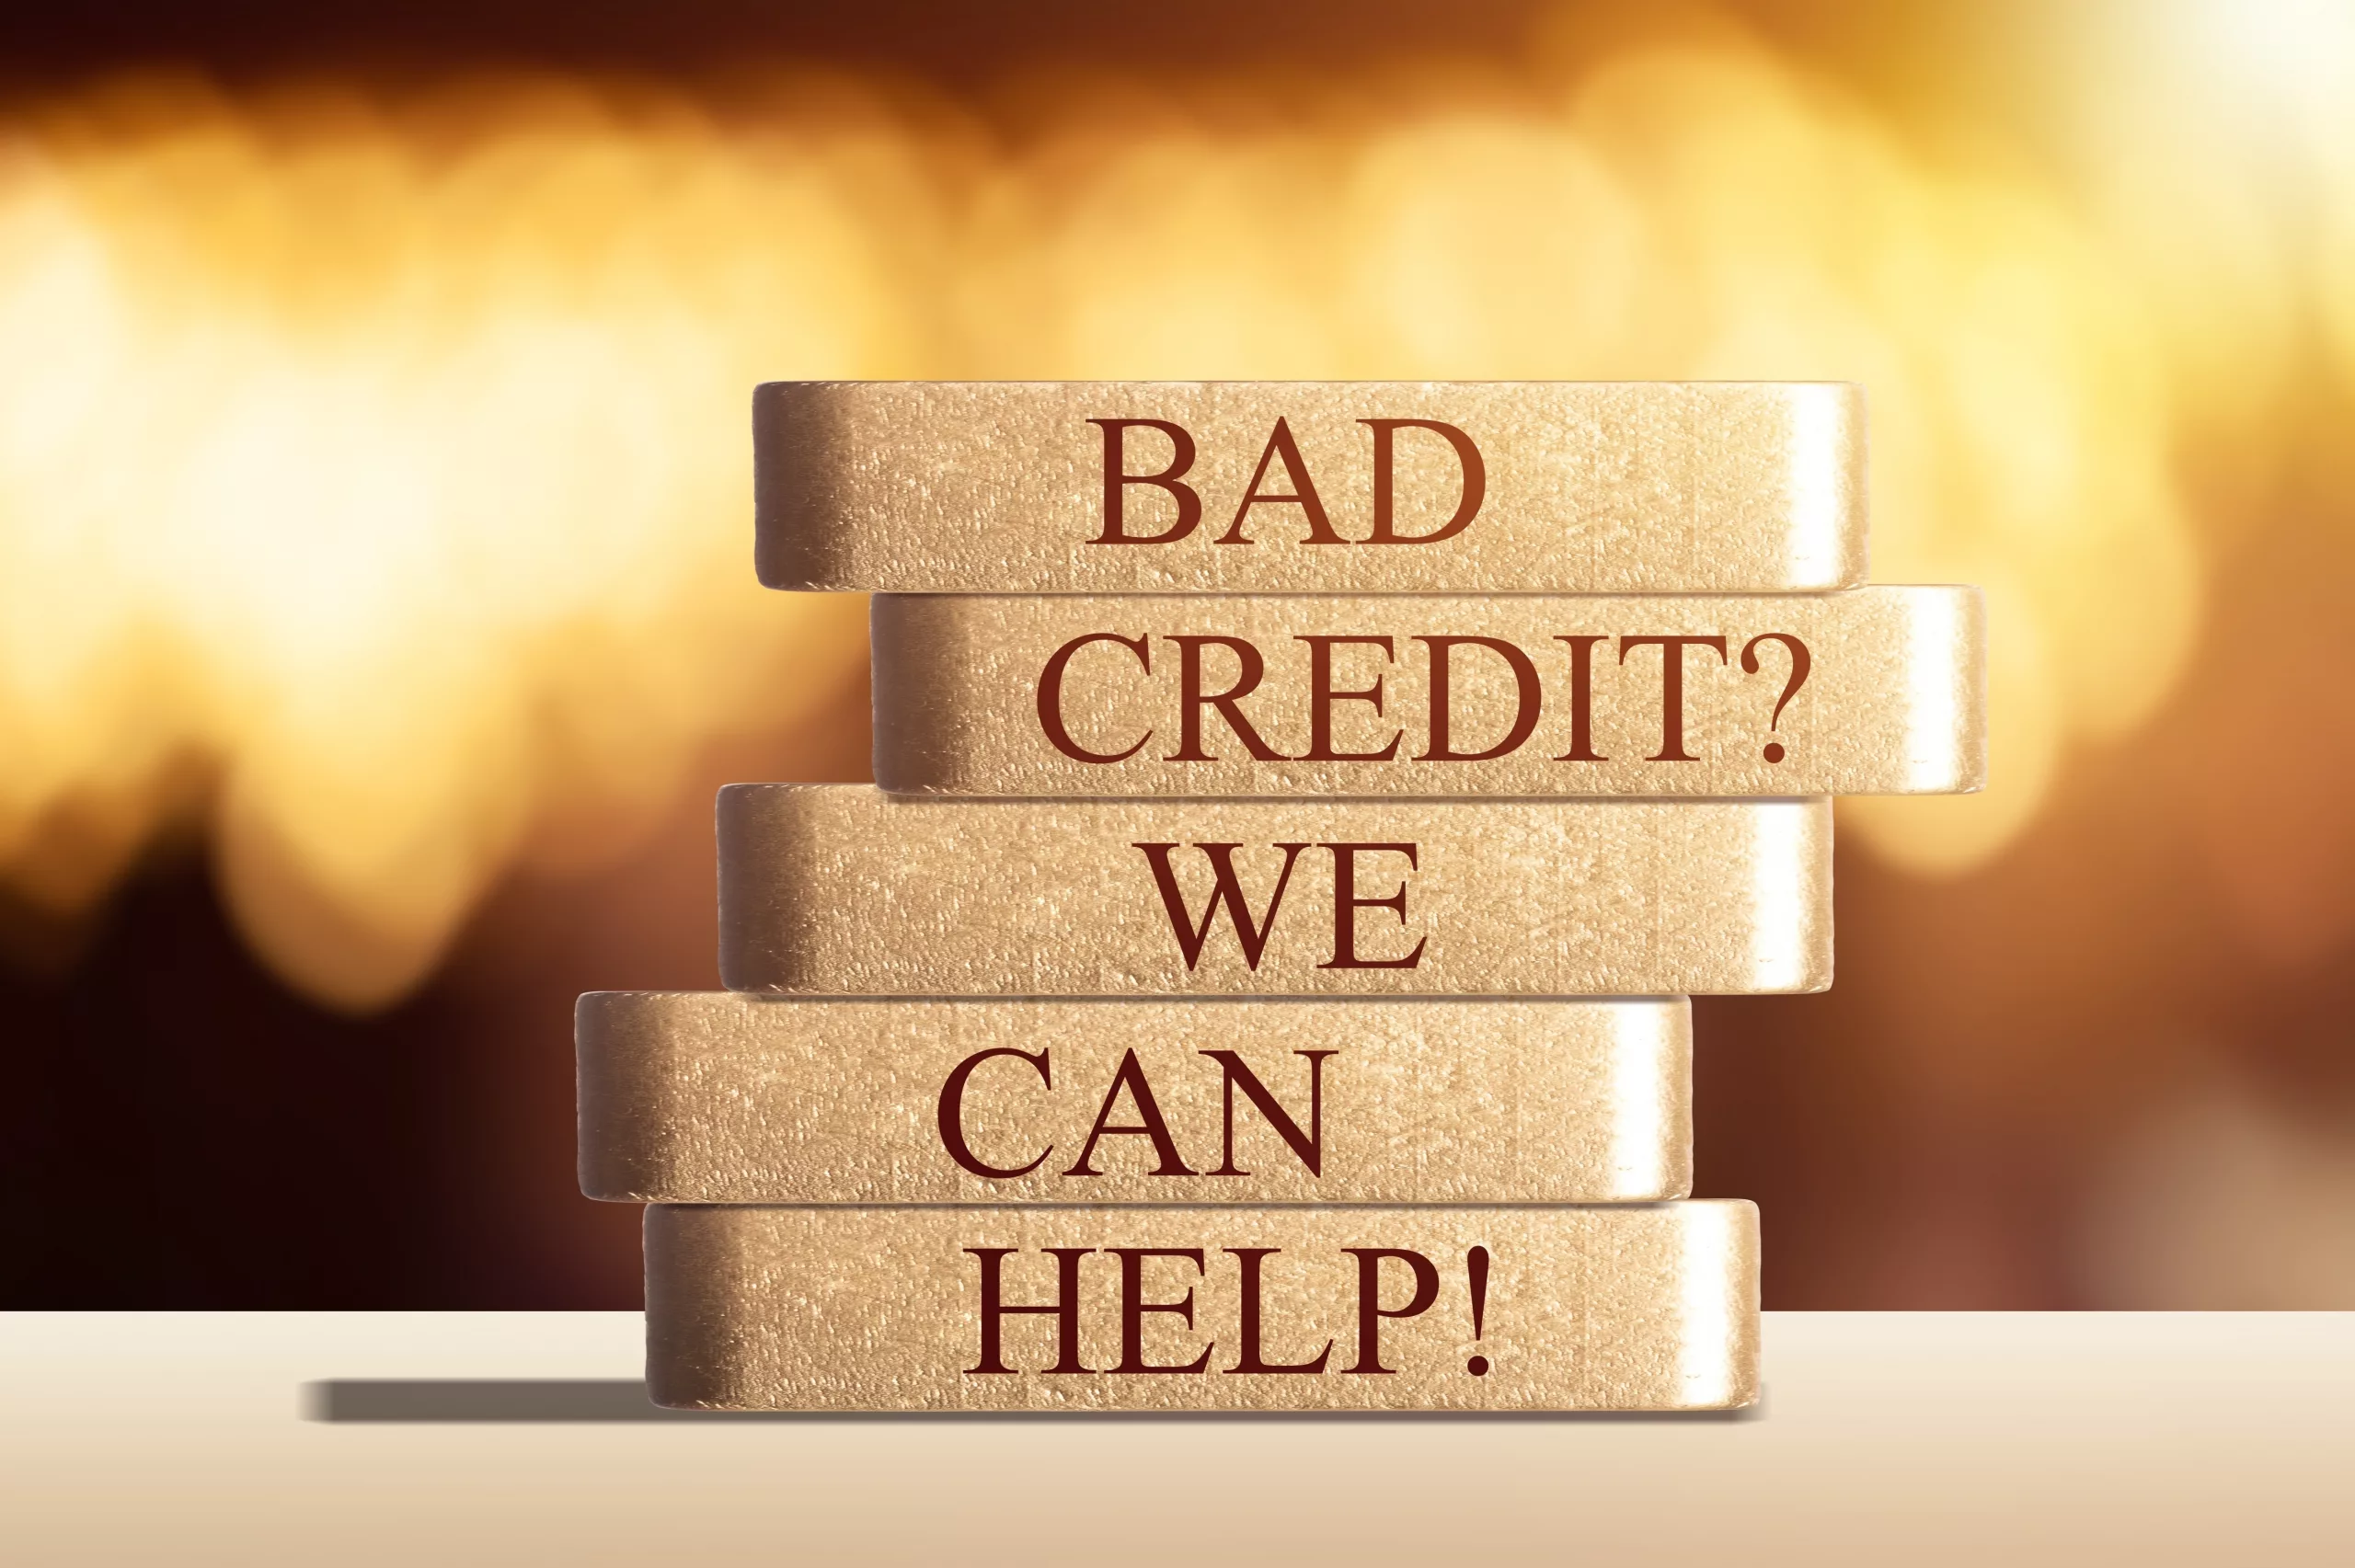 Credit Repair Companies